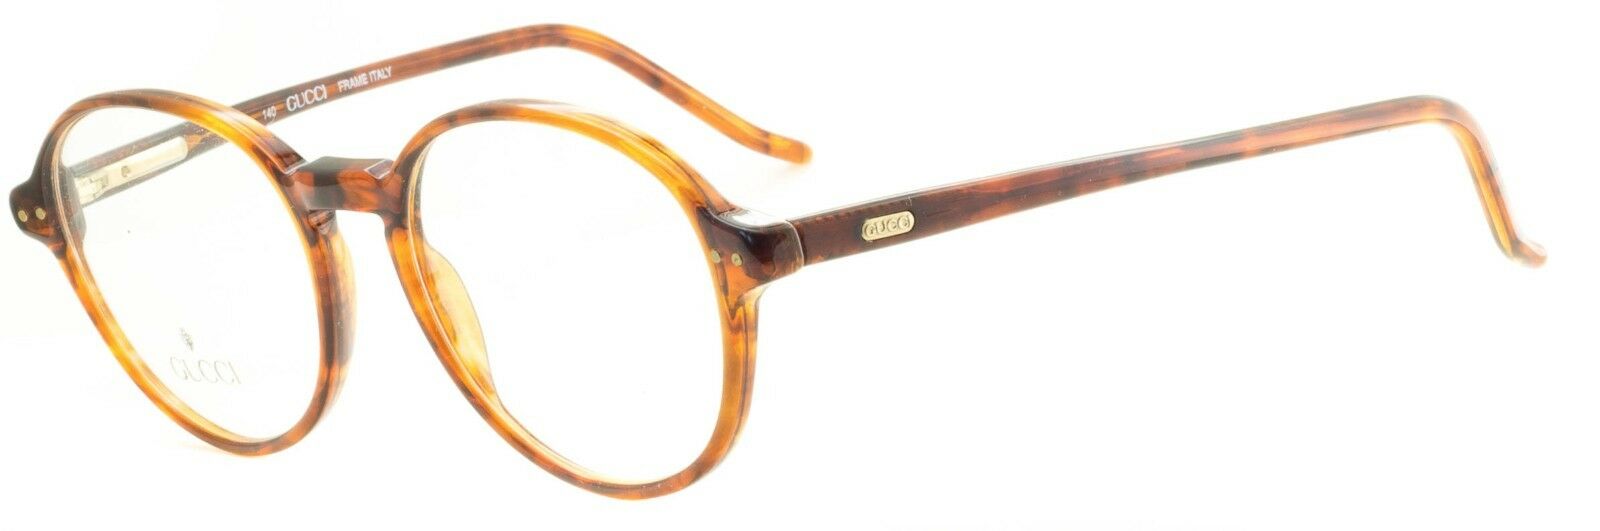 GUCCI GG 1144 B27 Eyewear FRAMES NEW Glasses RX Optical Eyeglasses ITALY - BNIB